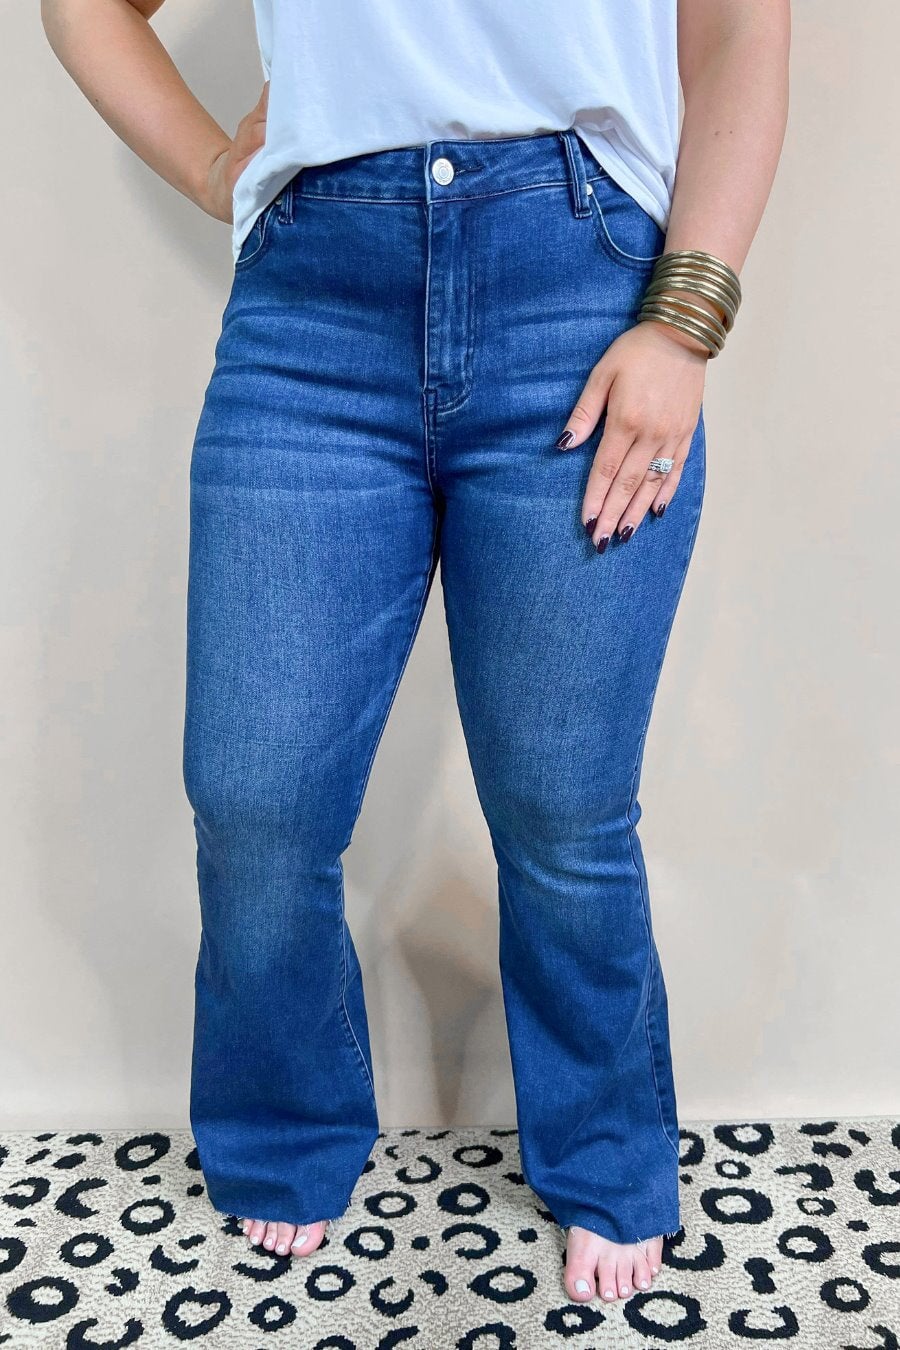 Chrissy Flare Jeans { Reg & Curve } – D BOUTIQUE